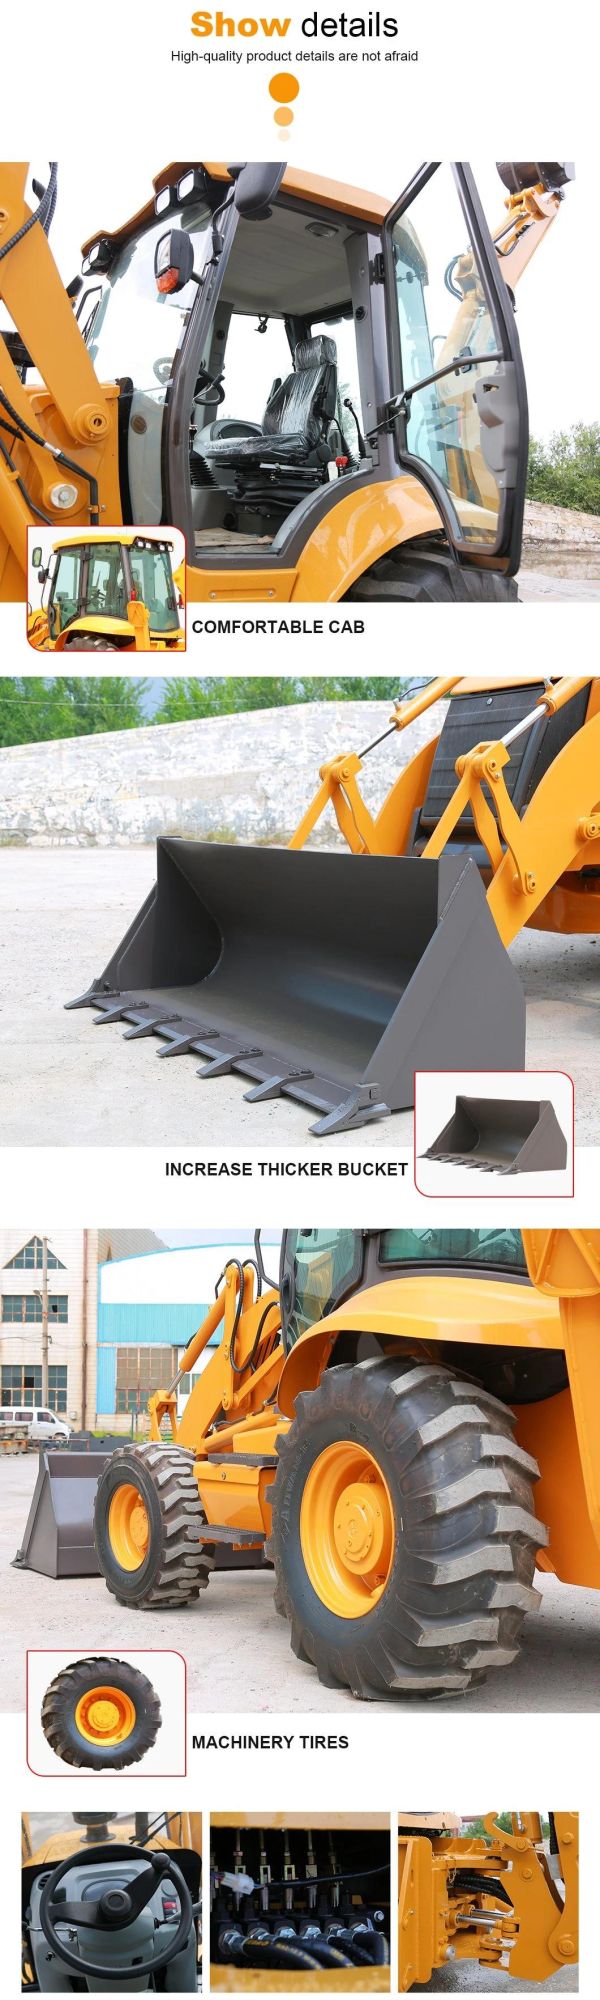 2021 Hot Selling Multi Function Backhoe Loader 8 Ton Excavator Loader Mini Backhoe Loader with Price